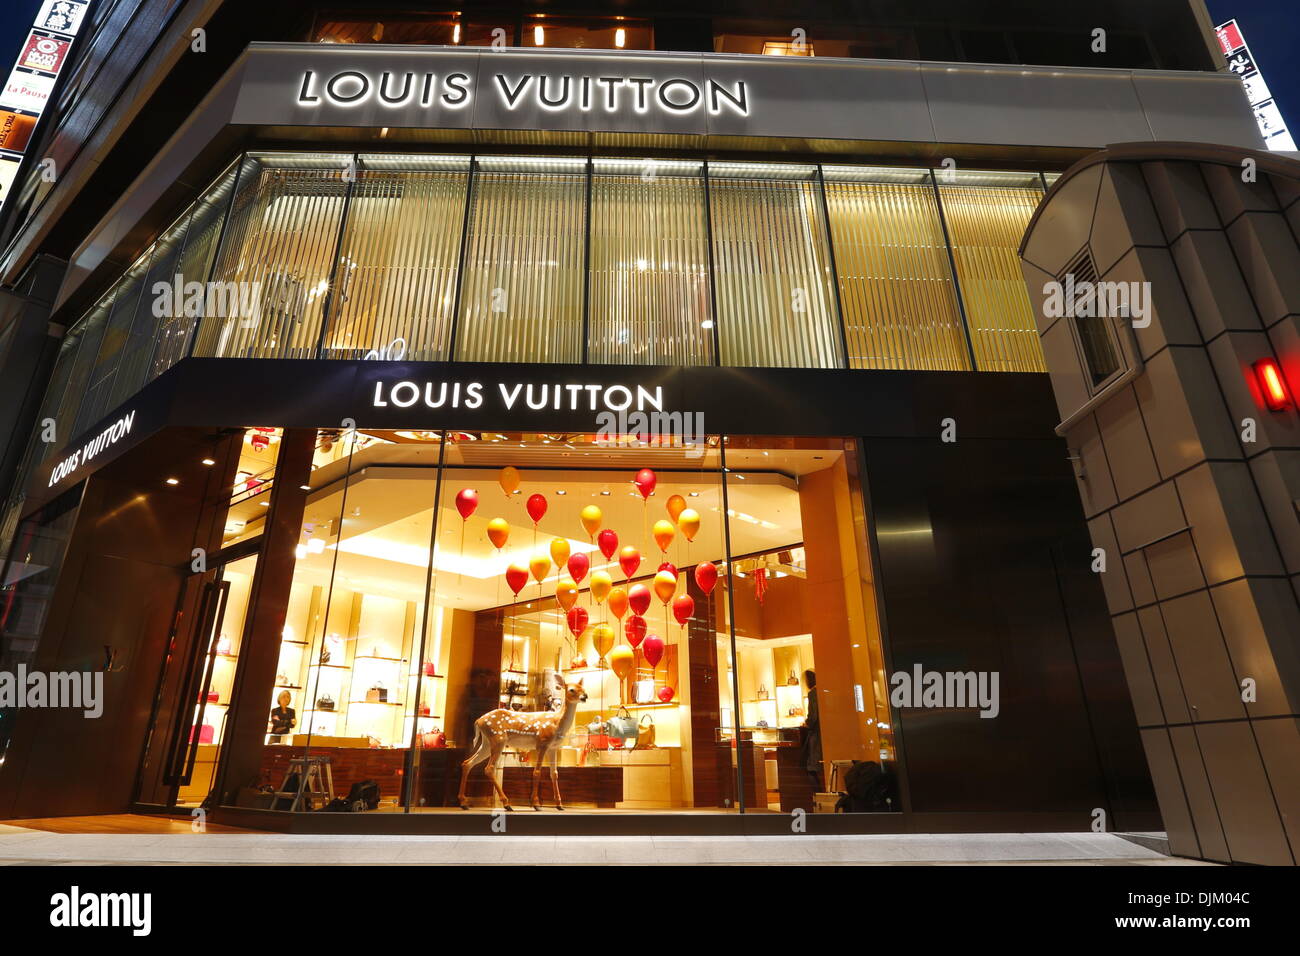 Louis Vuitton / One Omotesando – TP/A